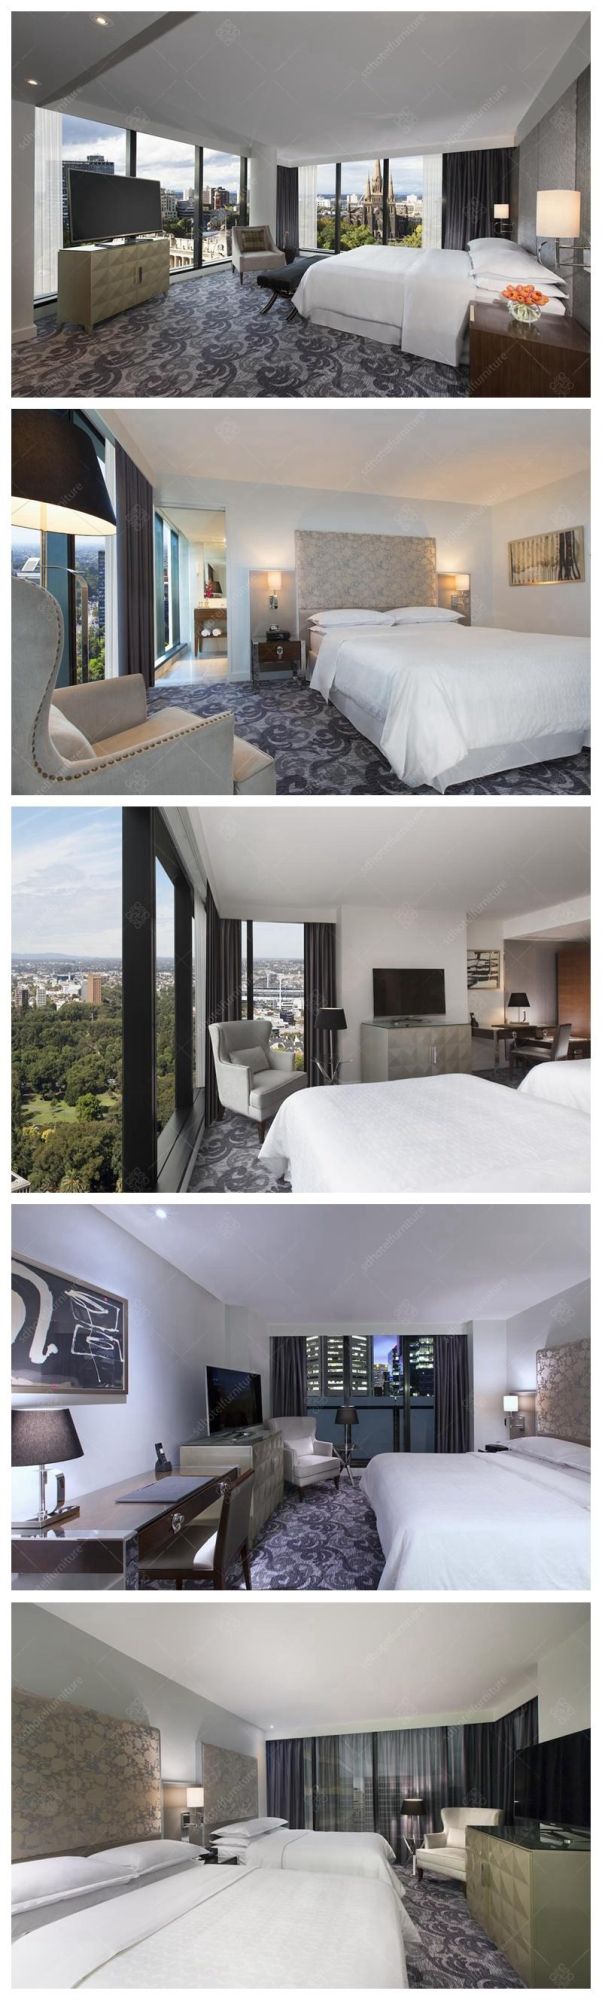 American Latest Modern King Bedroom Sets Hotel Furniture Sets for Sale